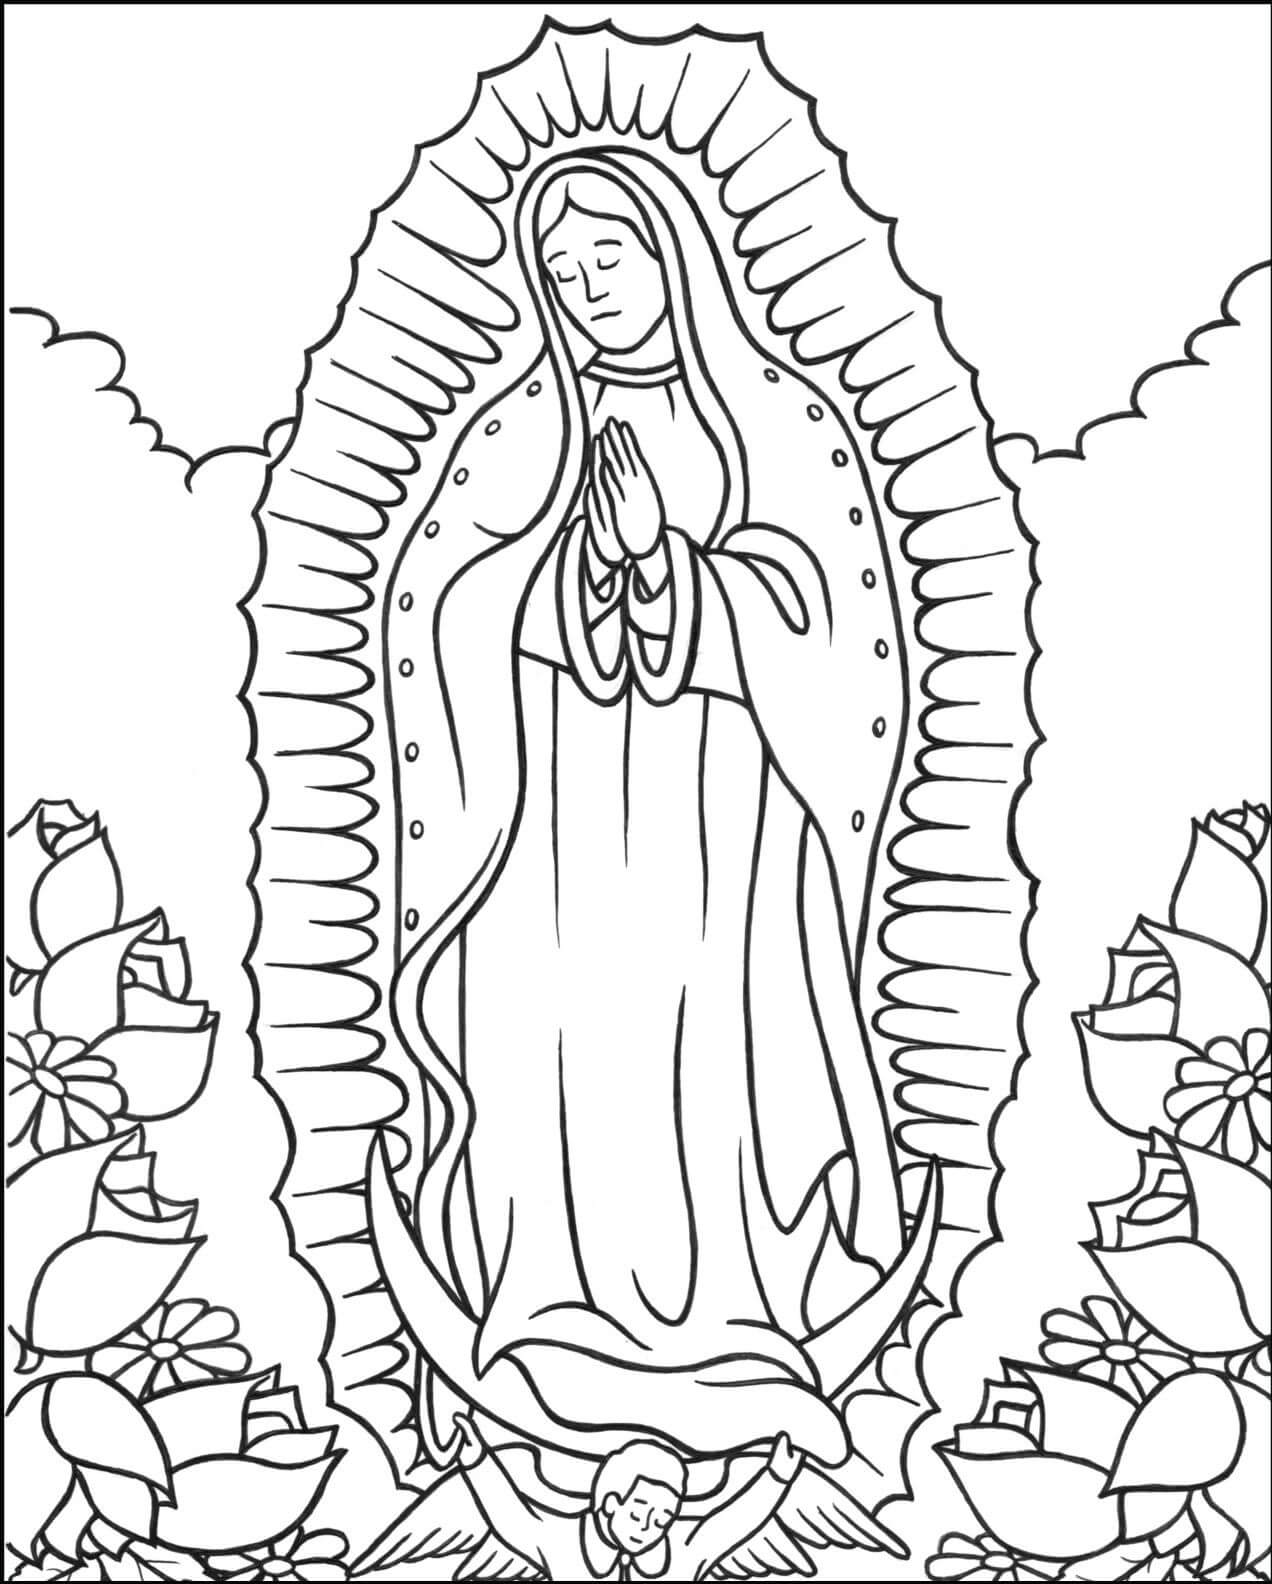 Gratuito Nossa Senhora da Conceição Aparecida para colorir